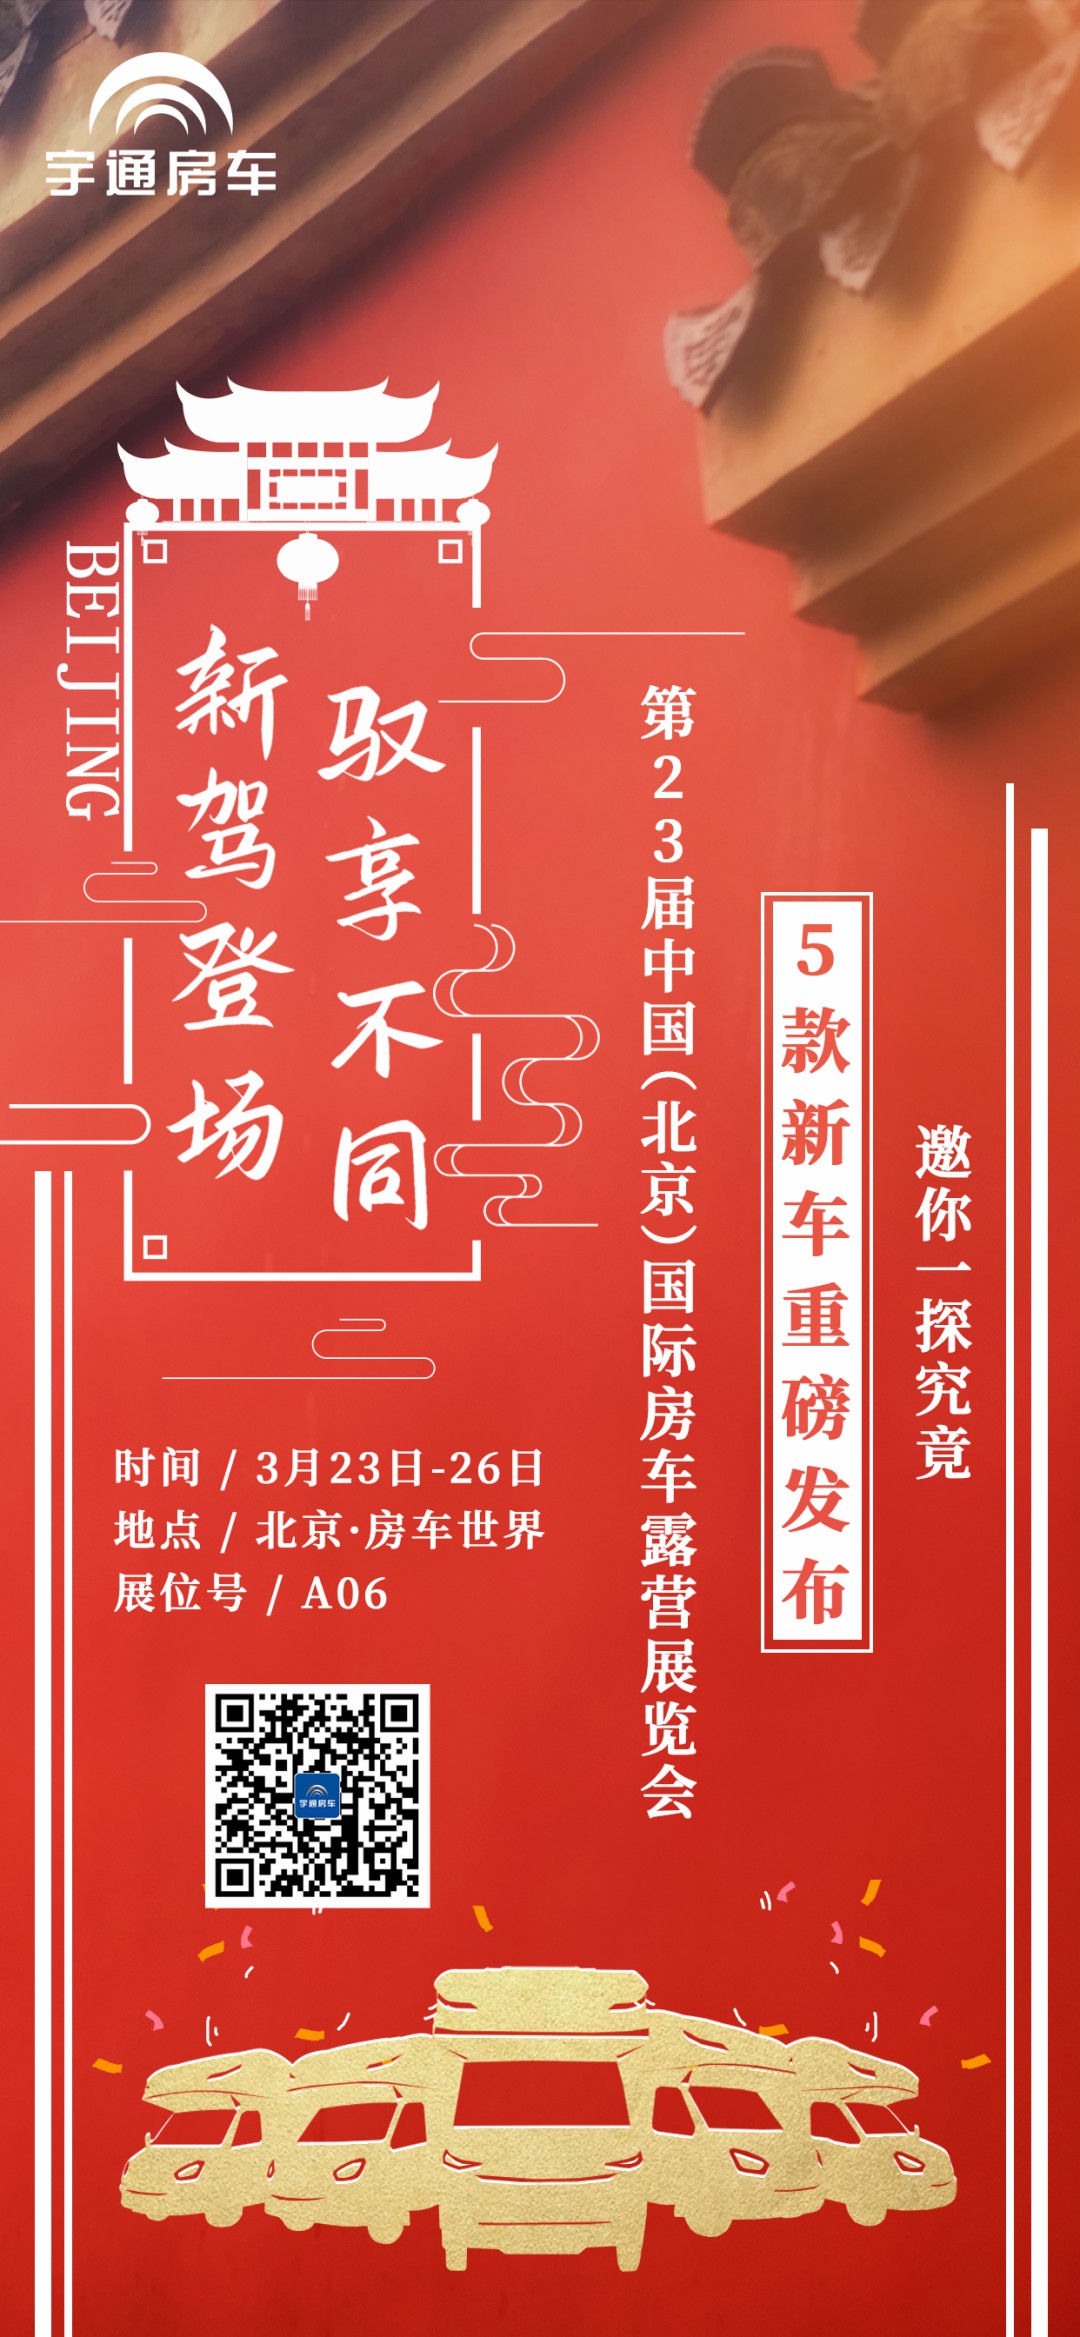 新驾登场、驭享不同——第23届中国（北京）国际房车露营展览会来啦